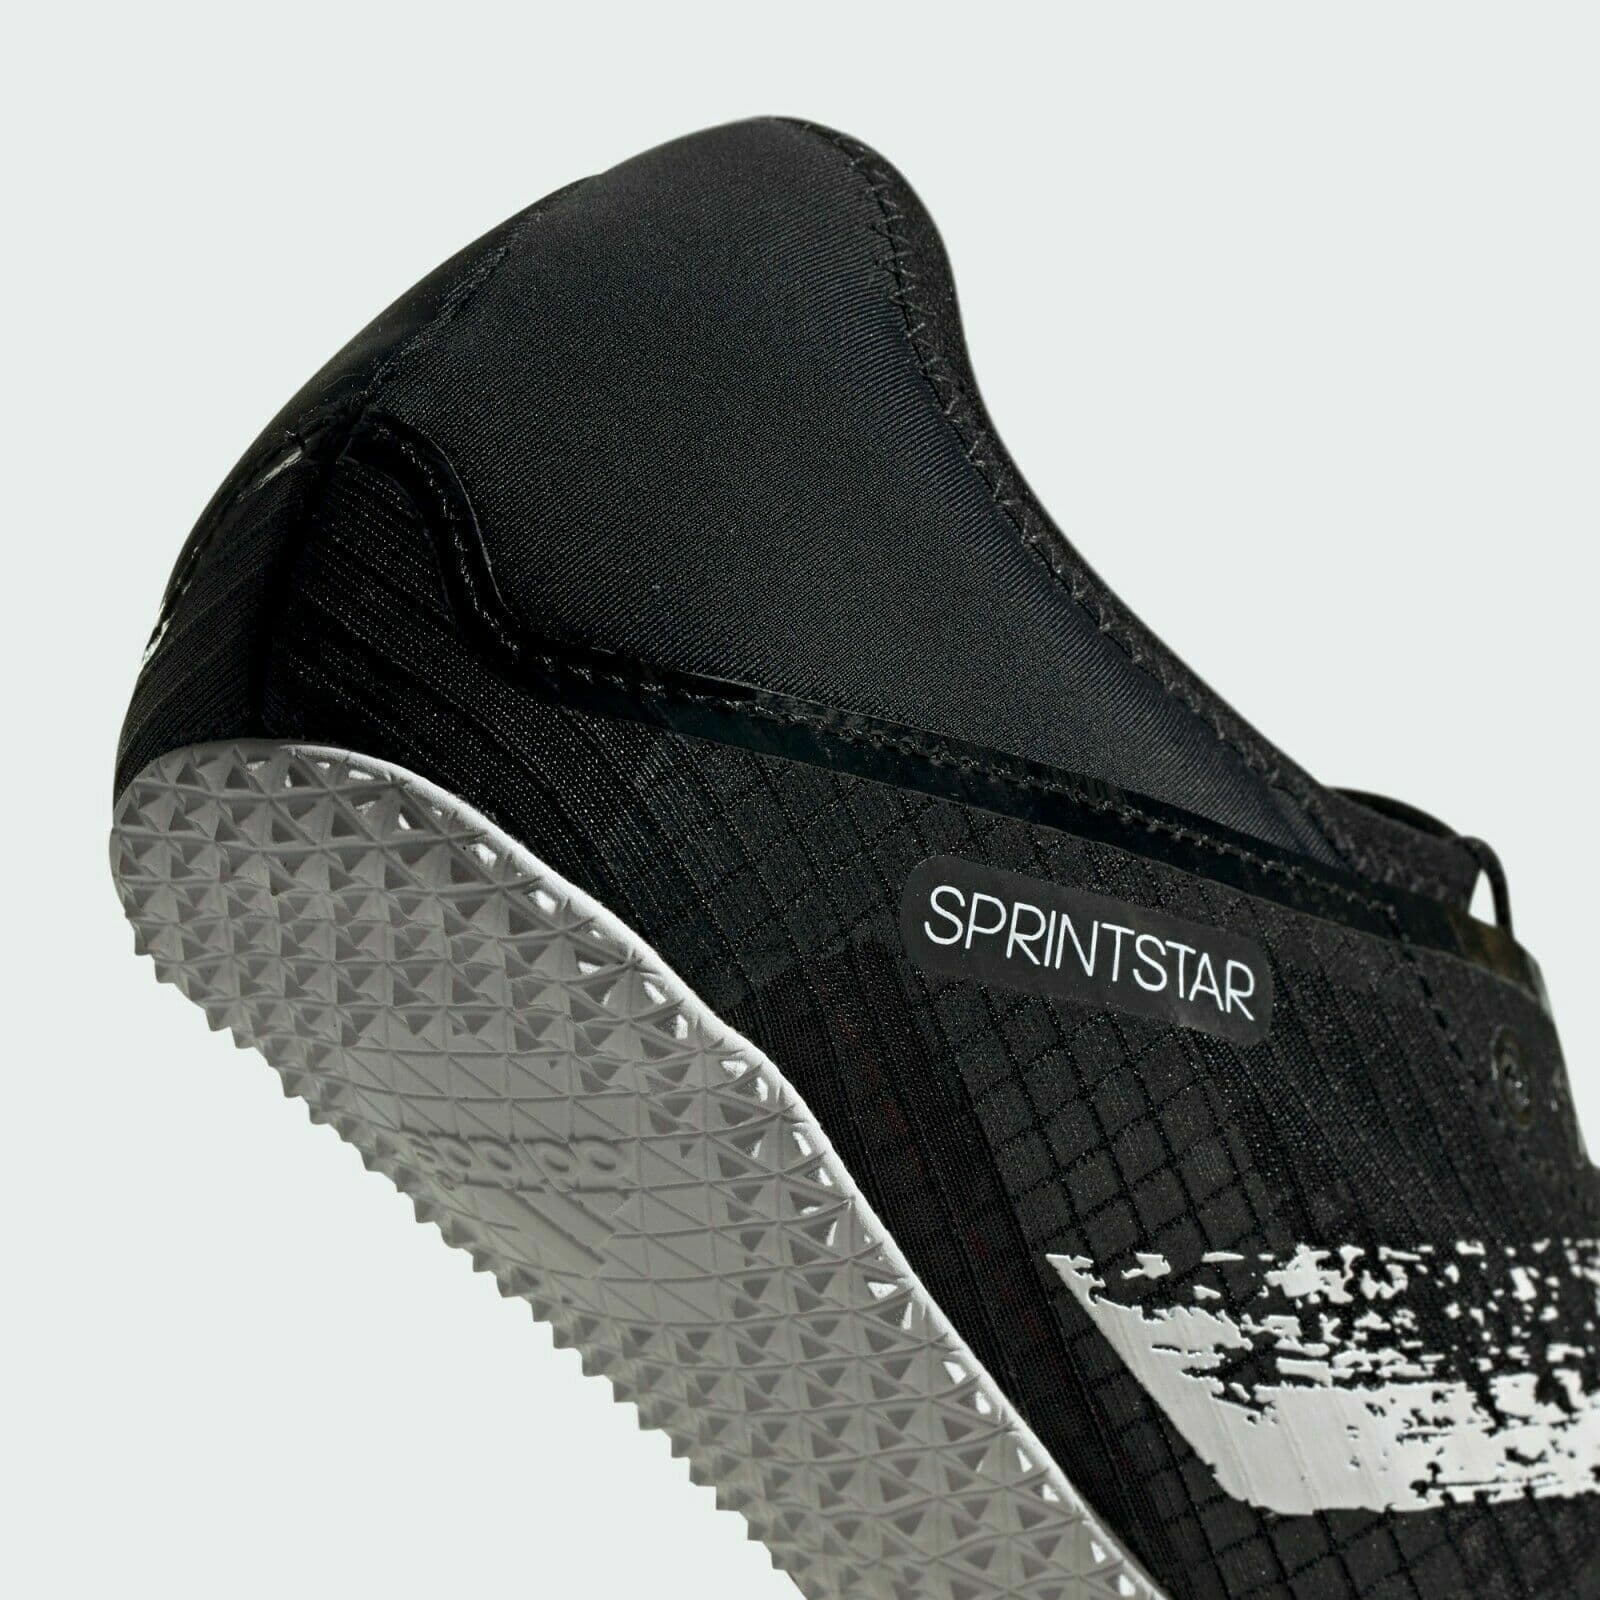 Adidas Sprintstar Running Spikes - Black